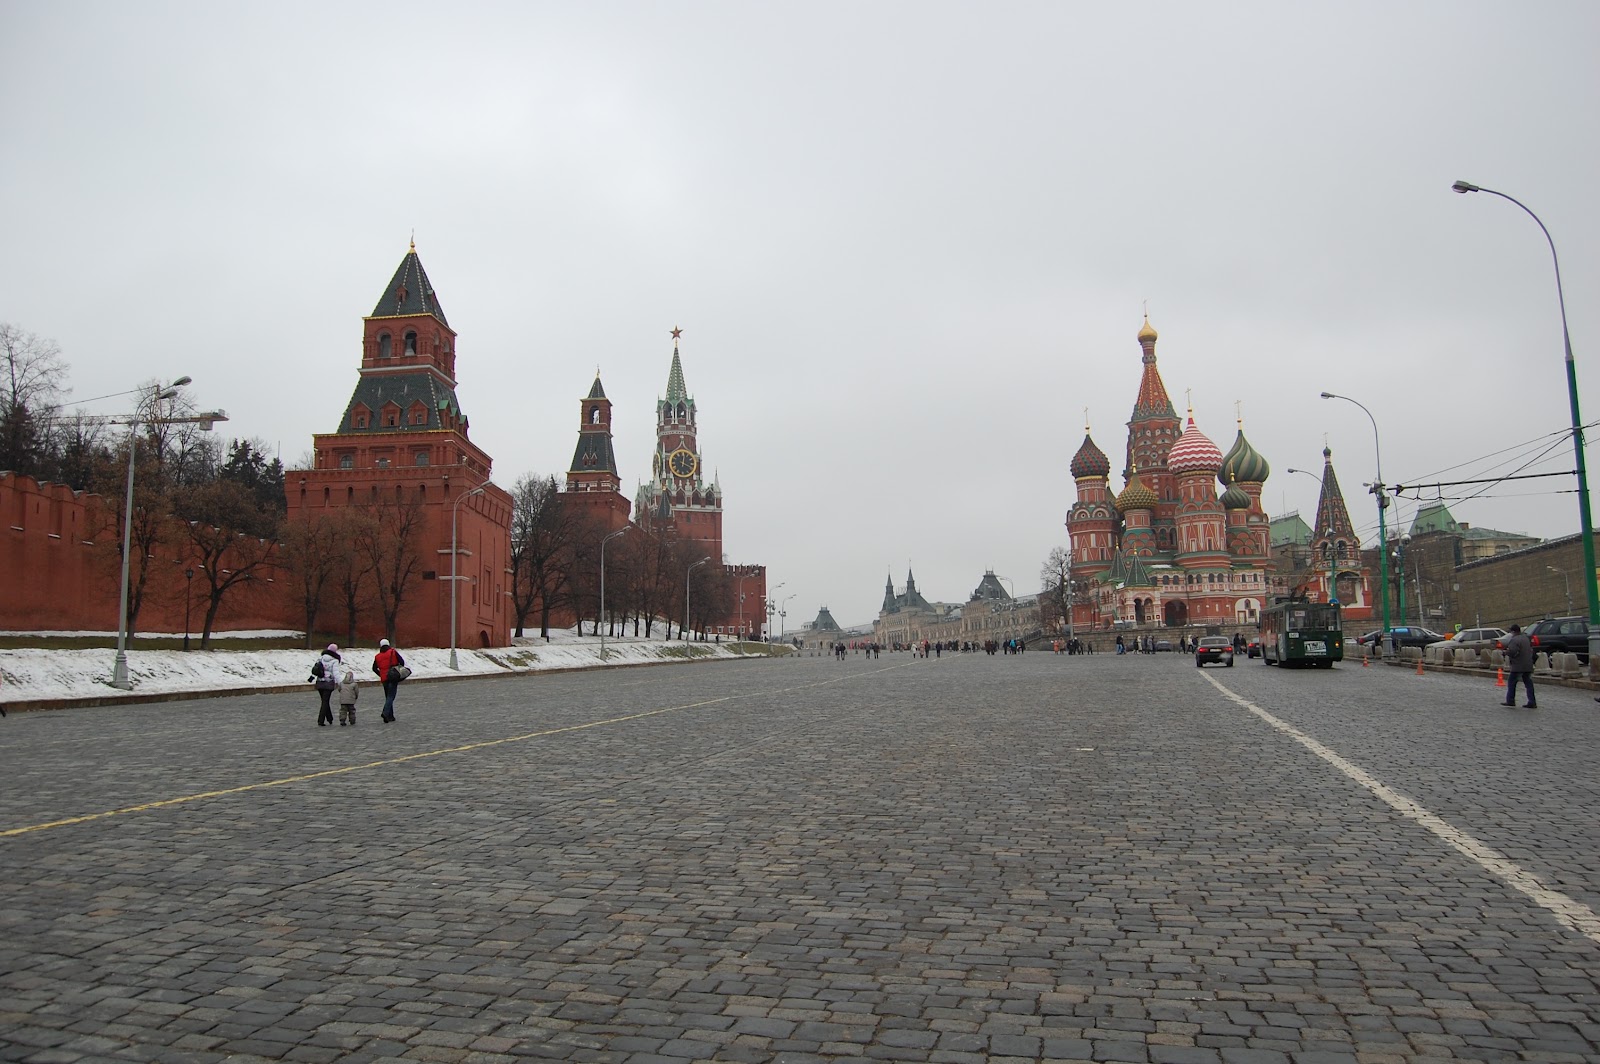 Himmel, draußen, Bastion, Kreml, Gebäude, Wolke, Baum, Gelände, öffentlicher Raum, Stadt, Winter, Straße, Menschen